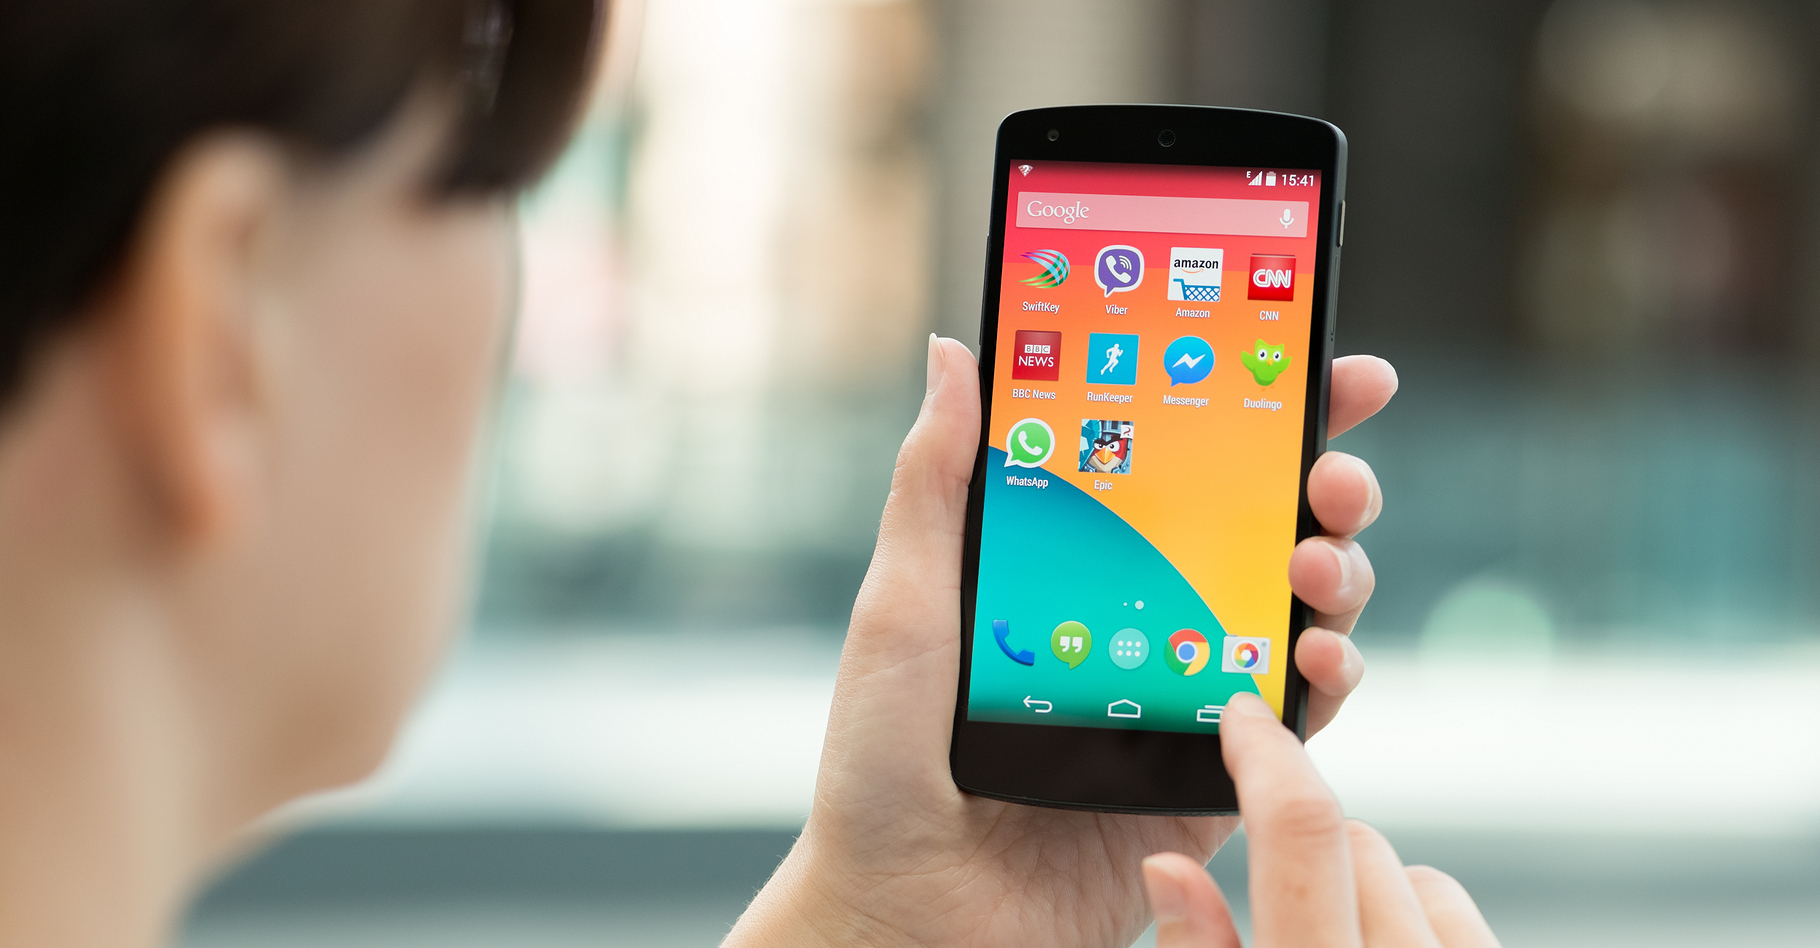 Un smartphone Android peut devenir une véritable télécommande pour PC, grâce au Wi-Fi. © Bloomicon, Shutterstock